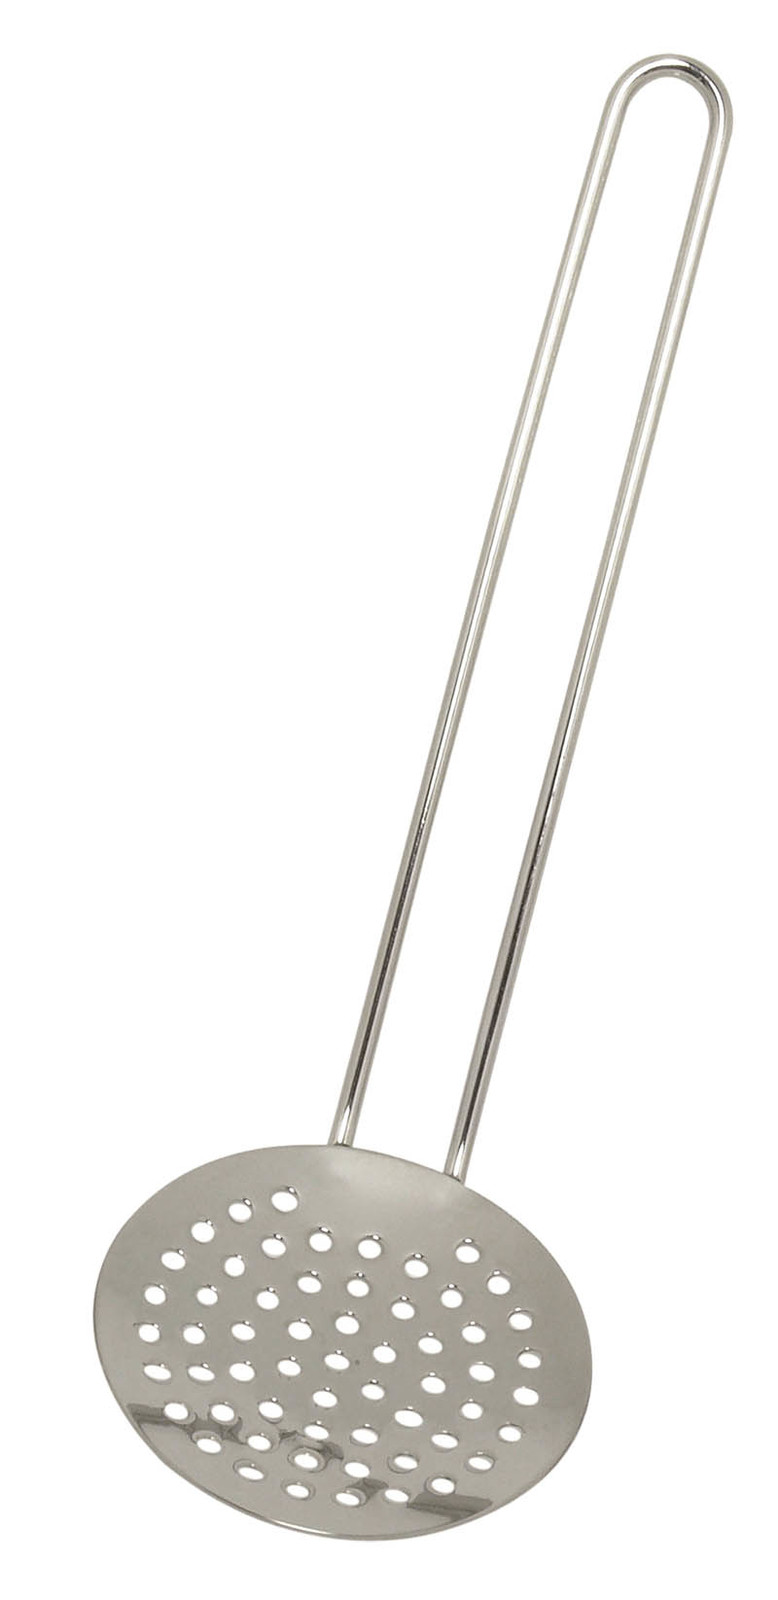 Gluckskafer Cooking Accessories - Skimmer 18cm